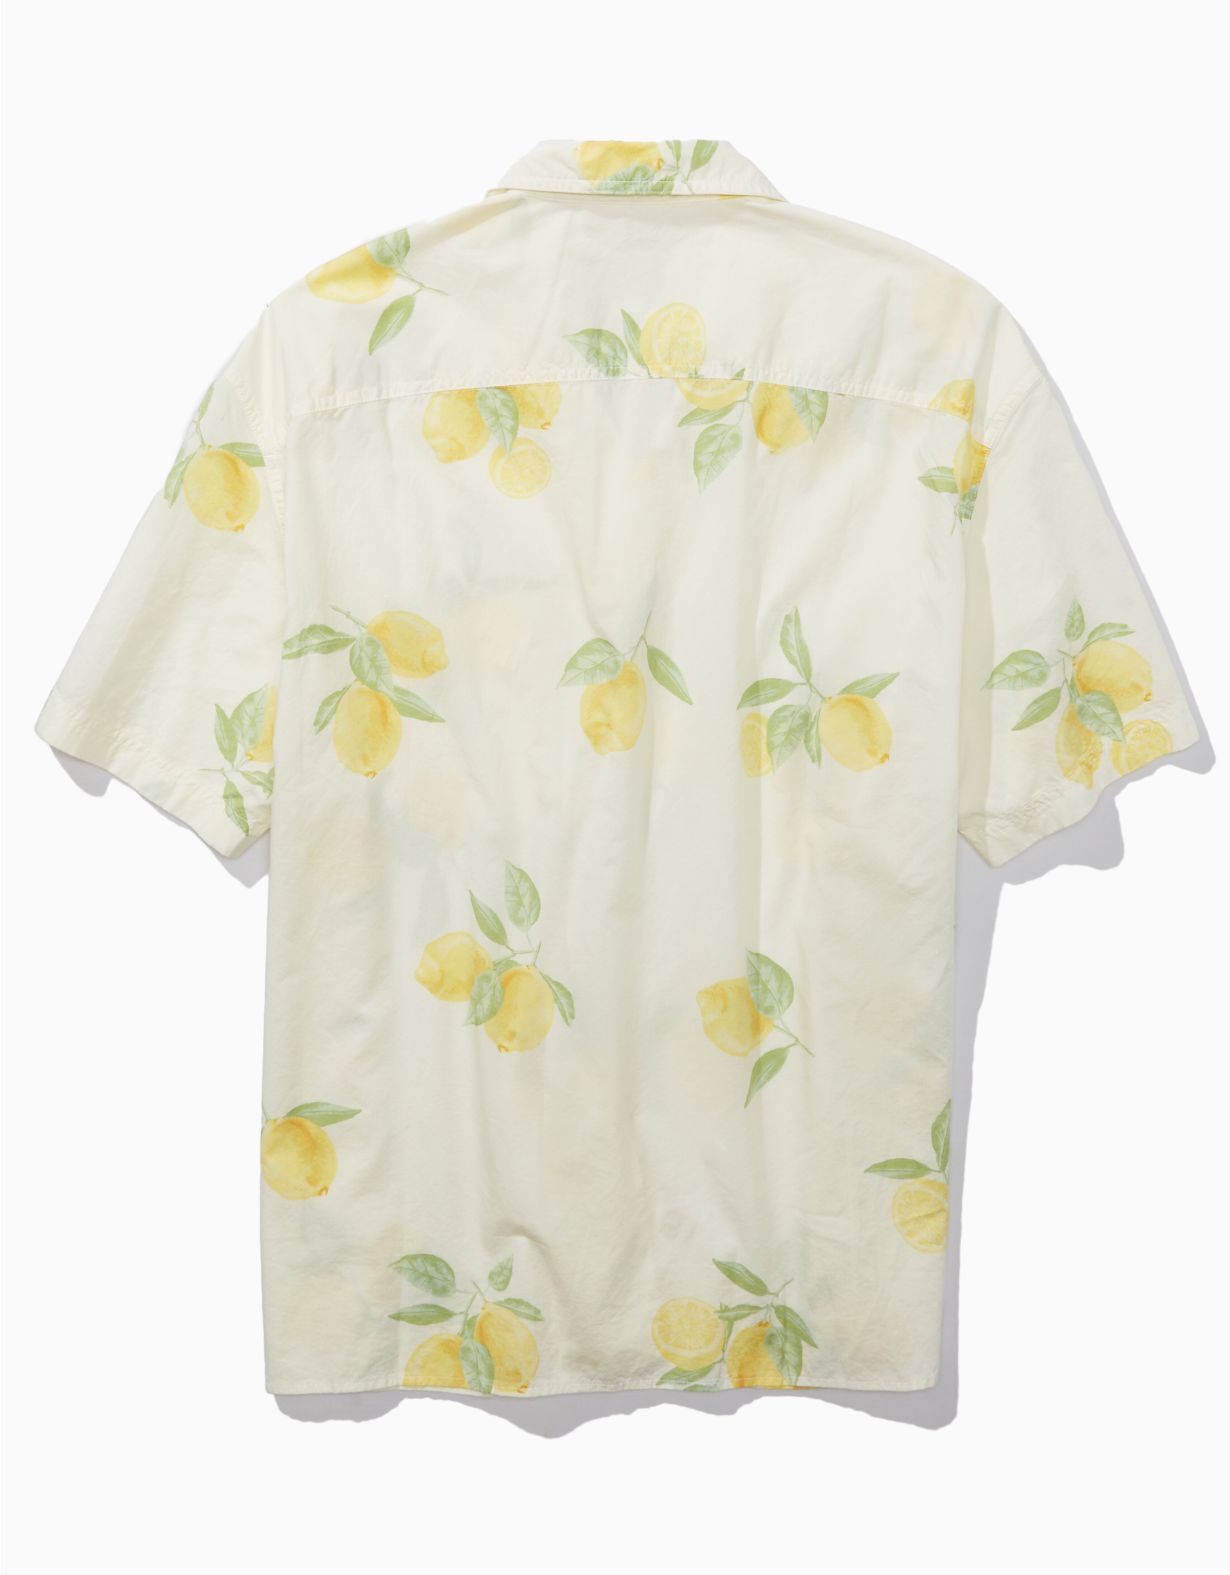 AE Camisa con botones y estampado de limones para la piscina